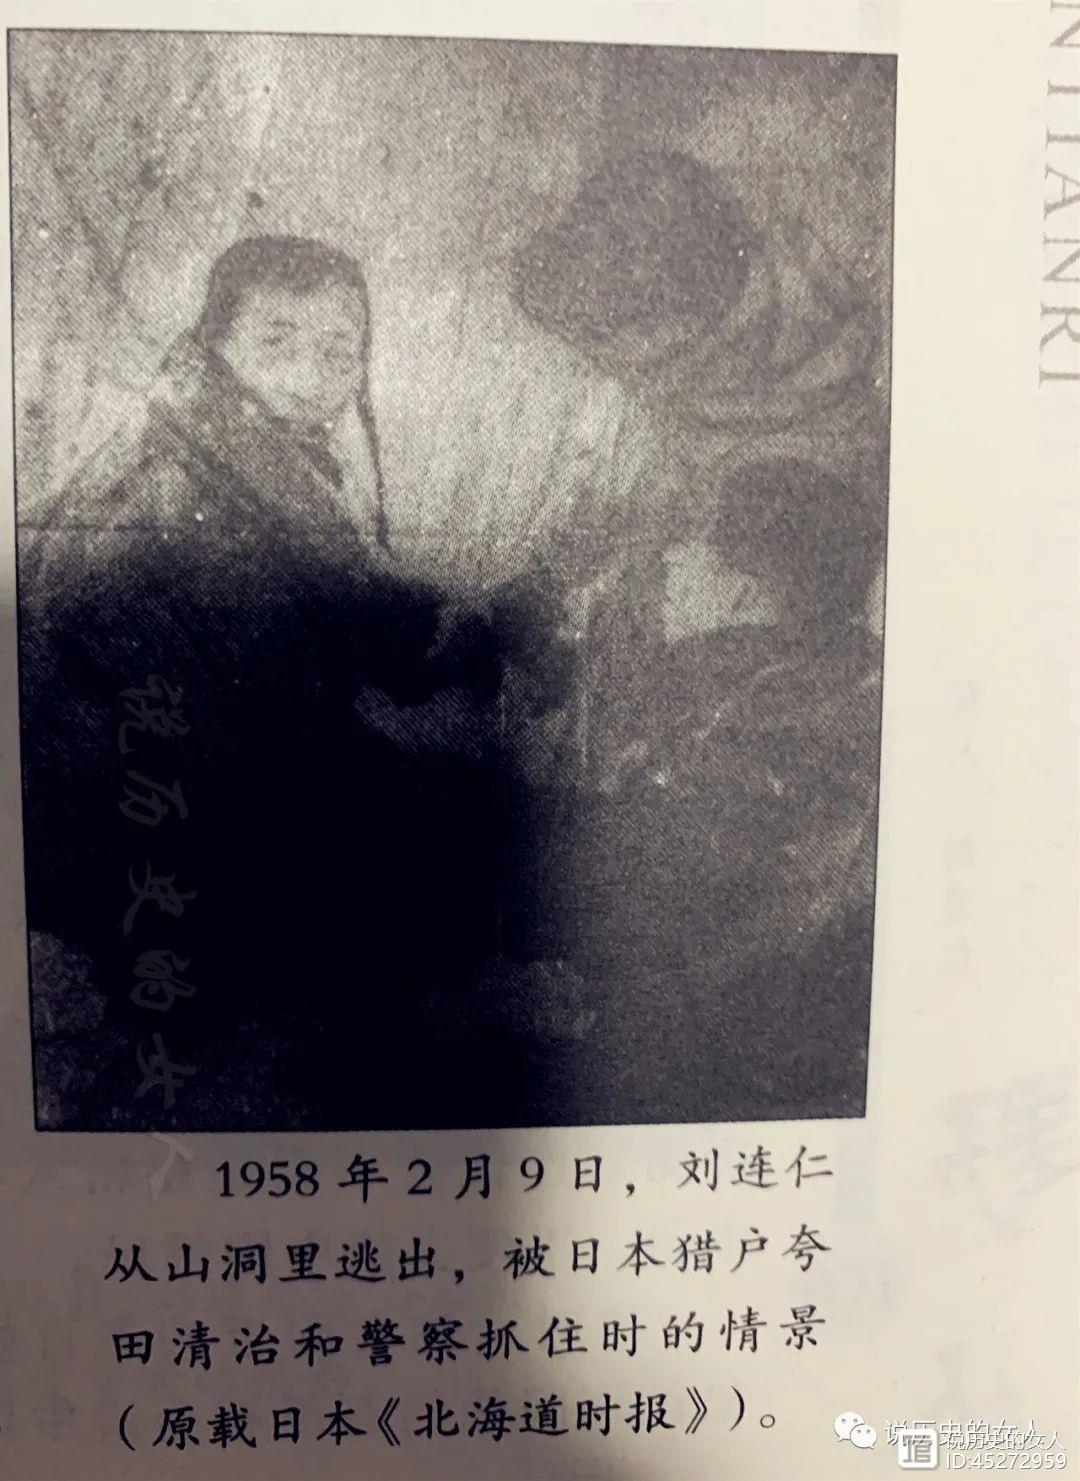 他被抓到日本，在日本深山穴居13年成野人，后起诉日本索赔2000万，结局如何？